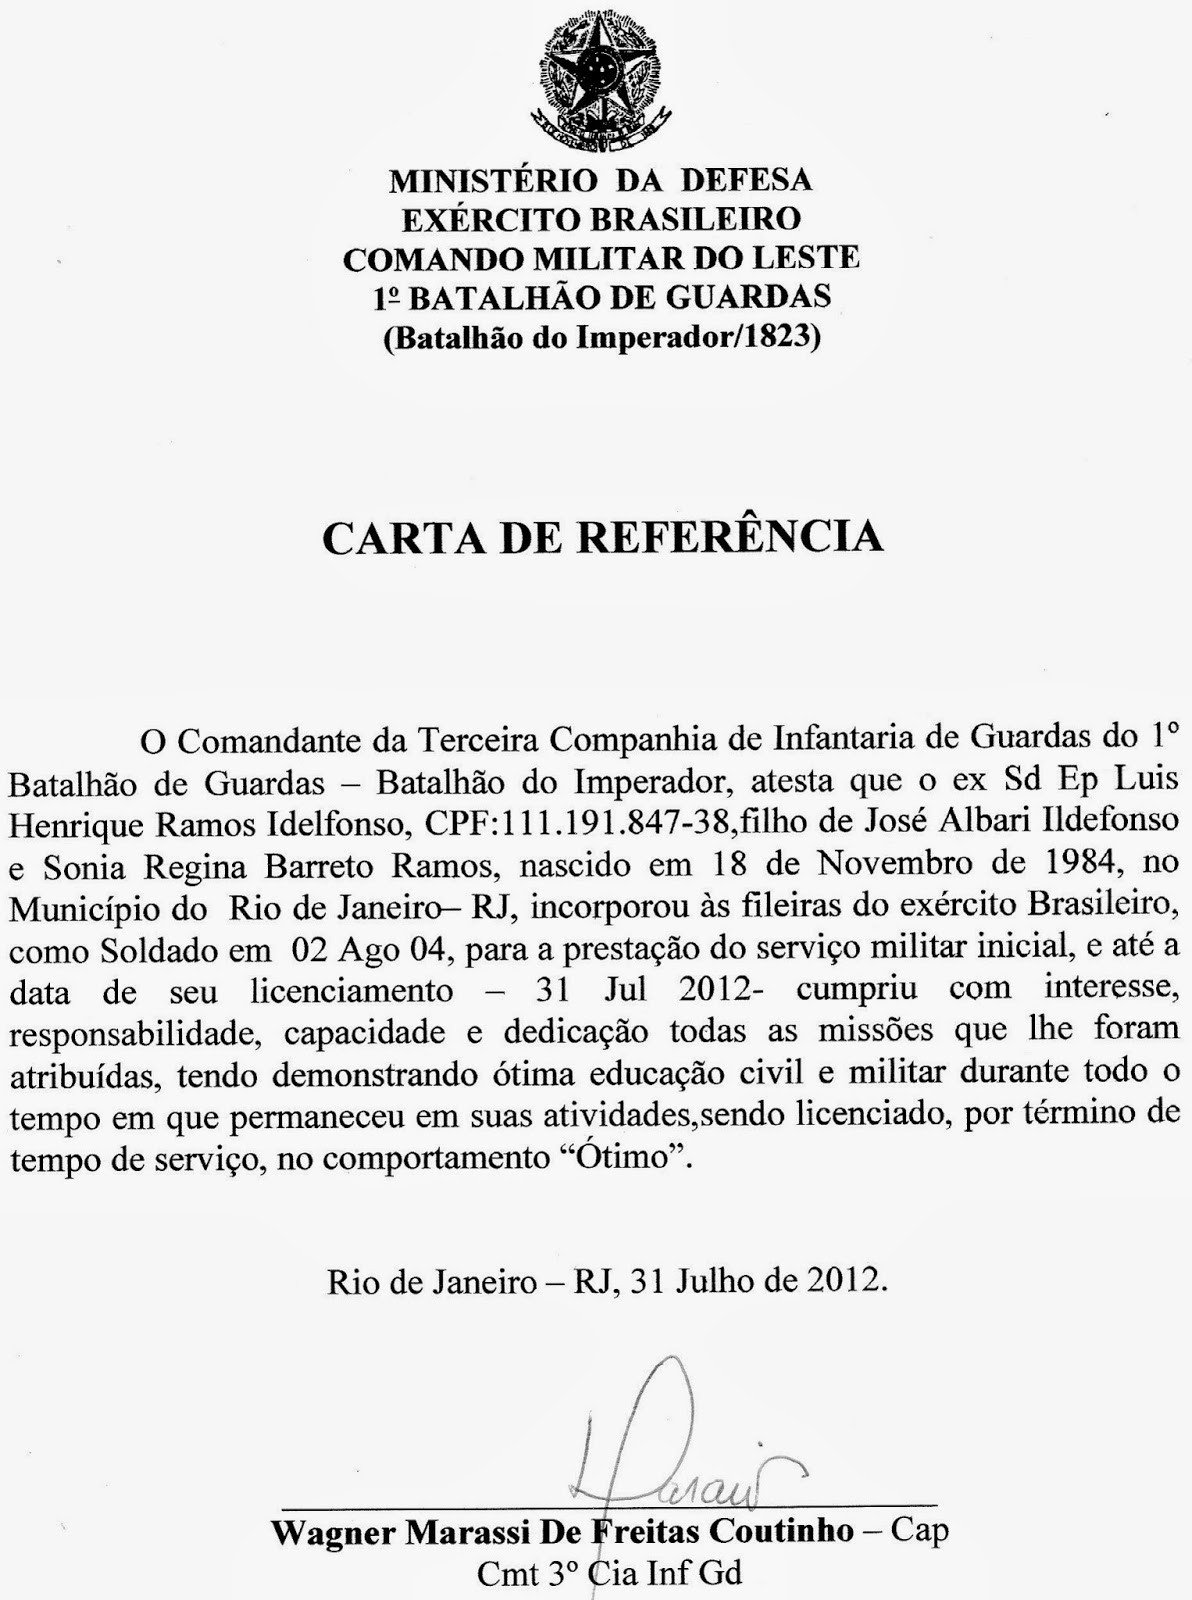 Blog Do Luiz Ramos Formação Militar